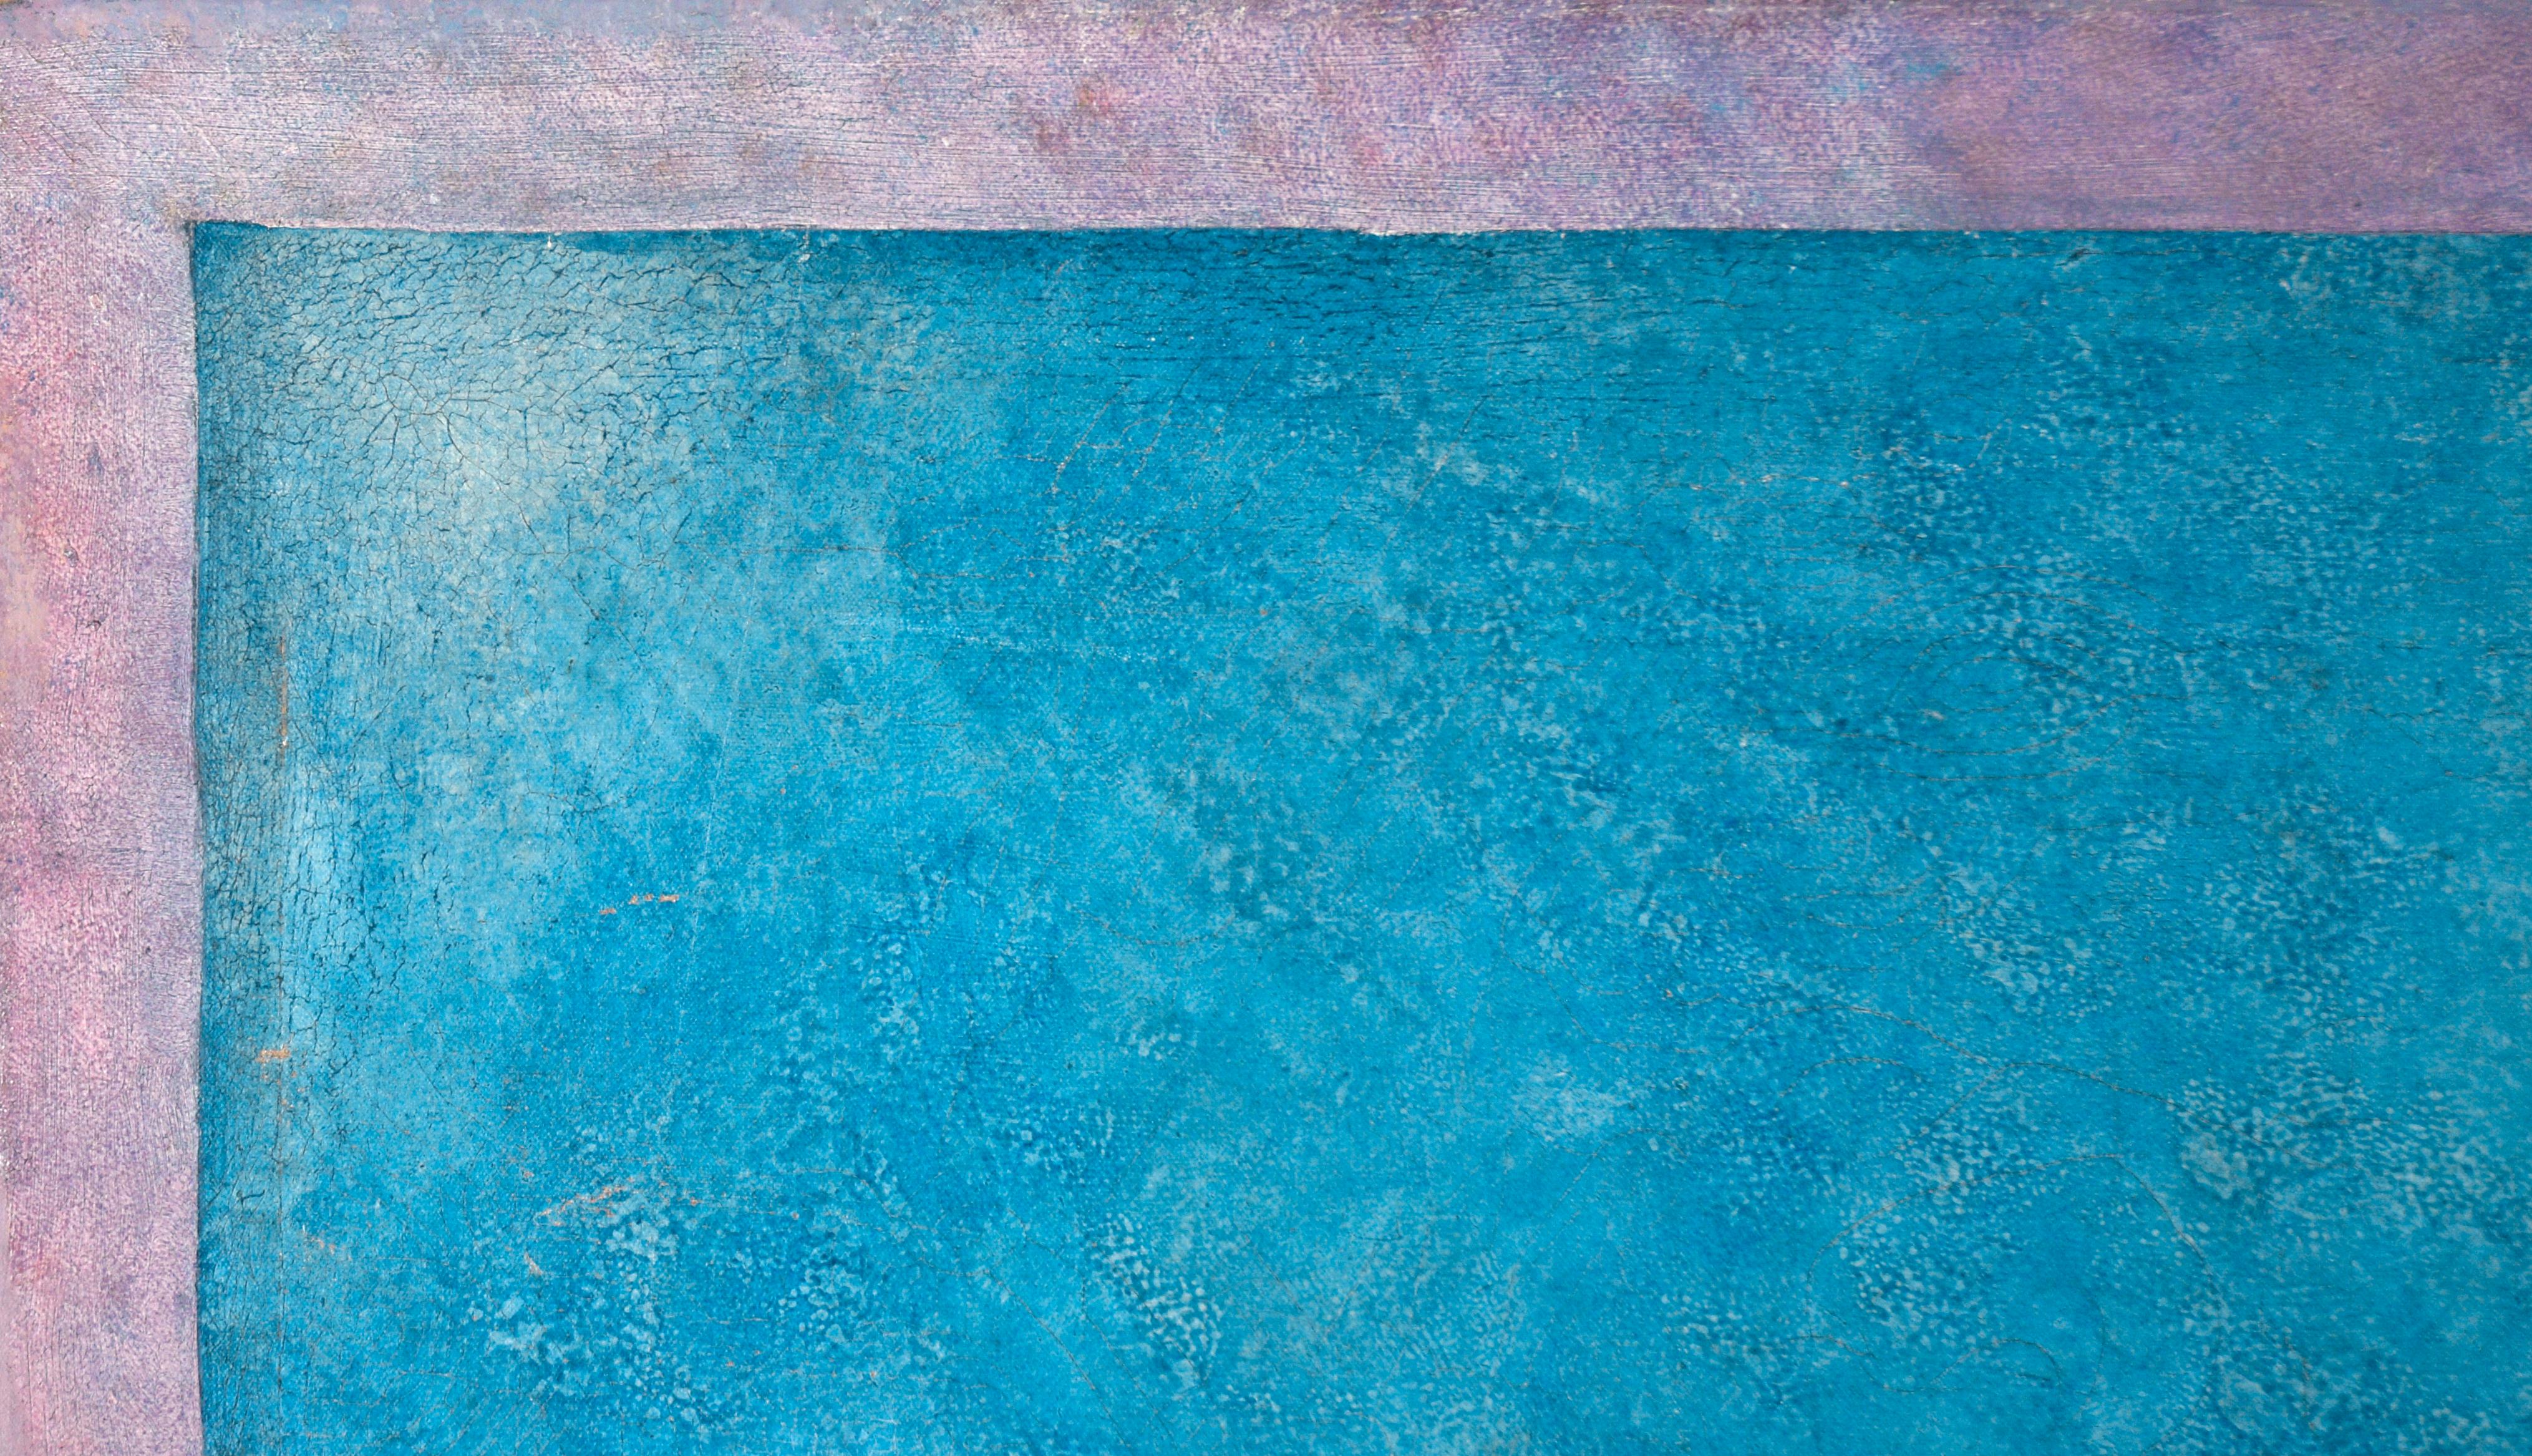 Nager au coucher du soleil - Paysage surréaliste avec deux nageurs à l'huile sur toile - Painting de John McDonnell